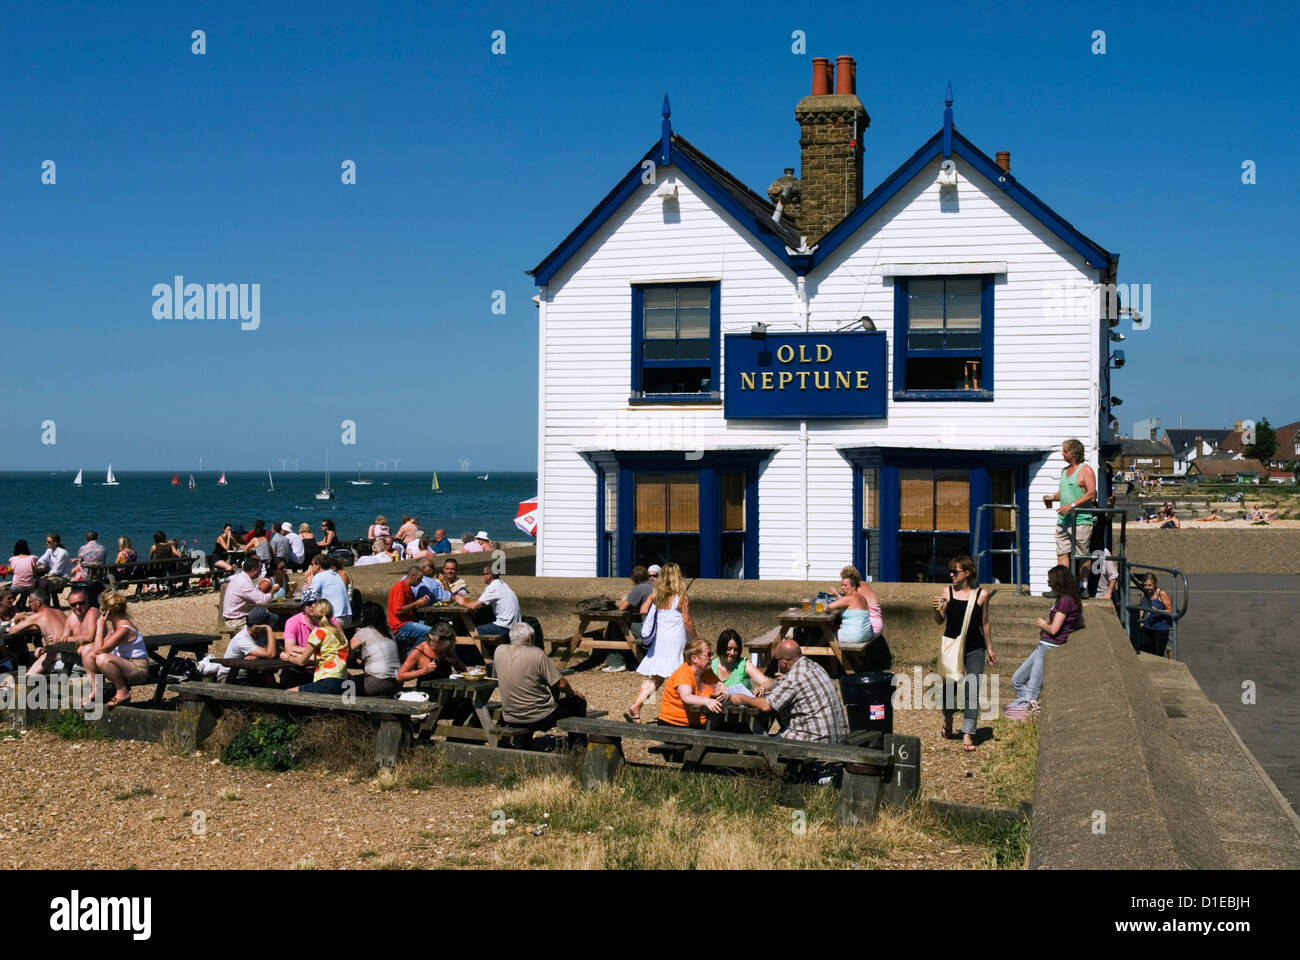 Old Neptune pub, Whitstable, Kent, England, United Kingdom, Europe Stock Photo